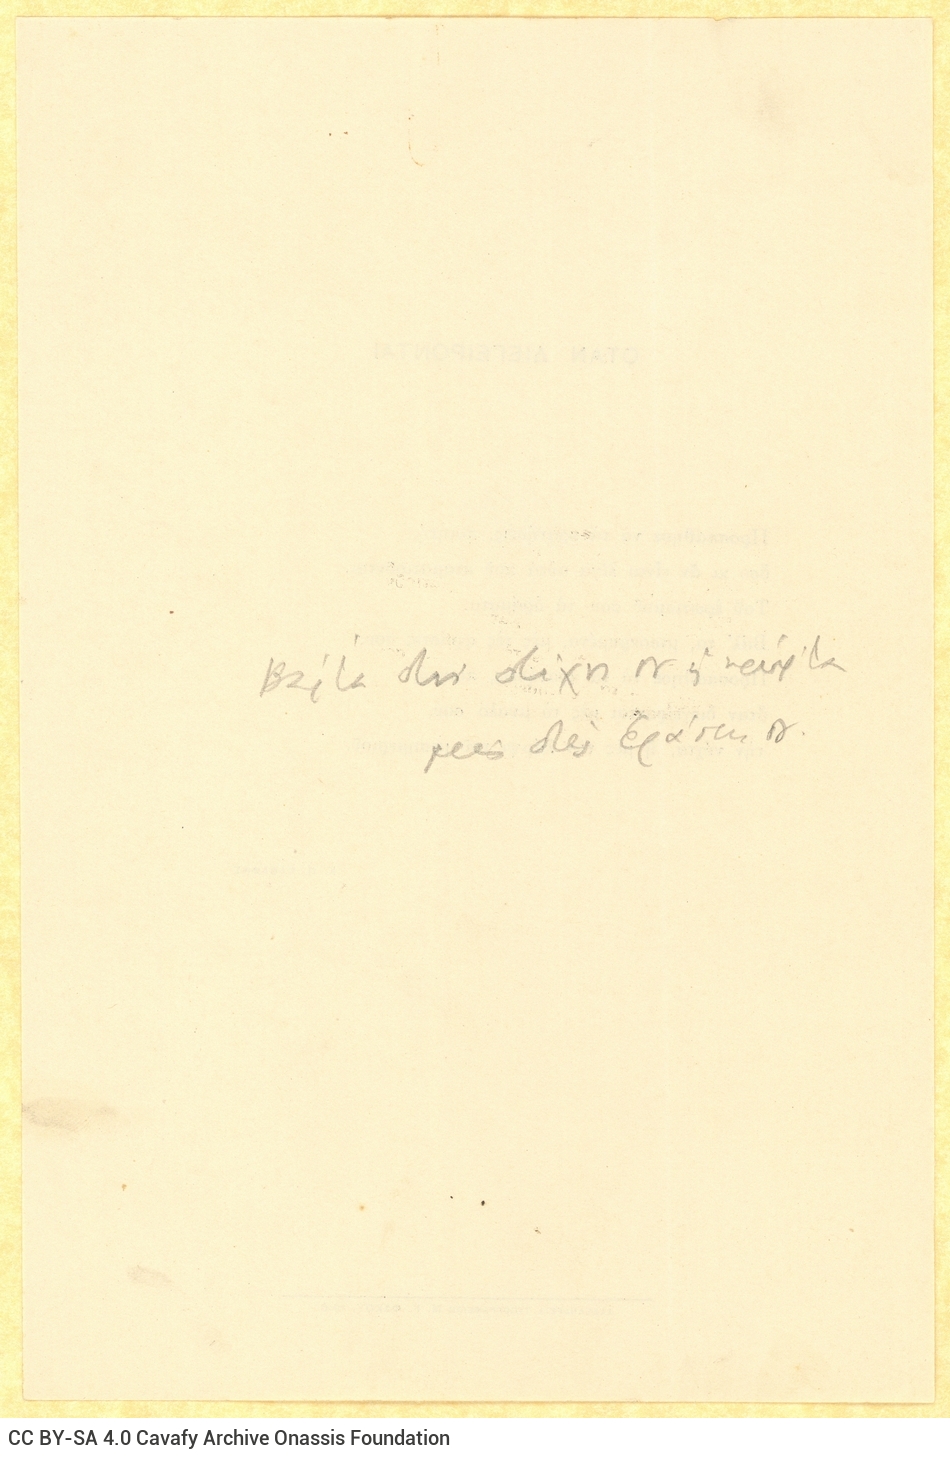 Έντυπο μονόφυλλο με το ποίημα «Όταν Διεγείρονται» στο recto. Χειρόγρ�